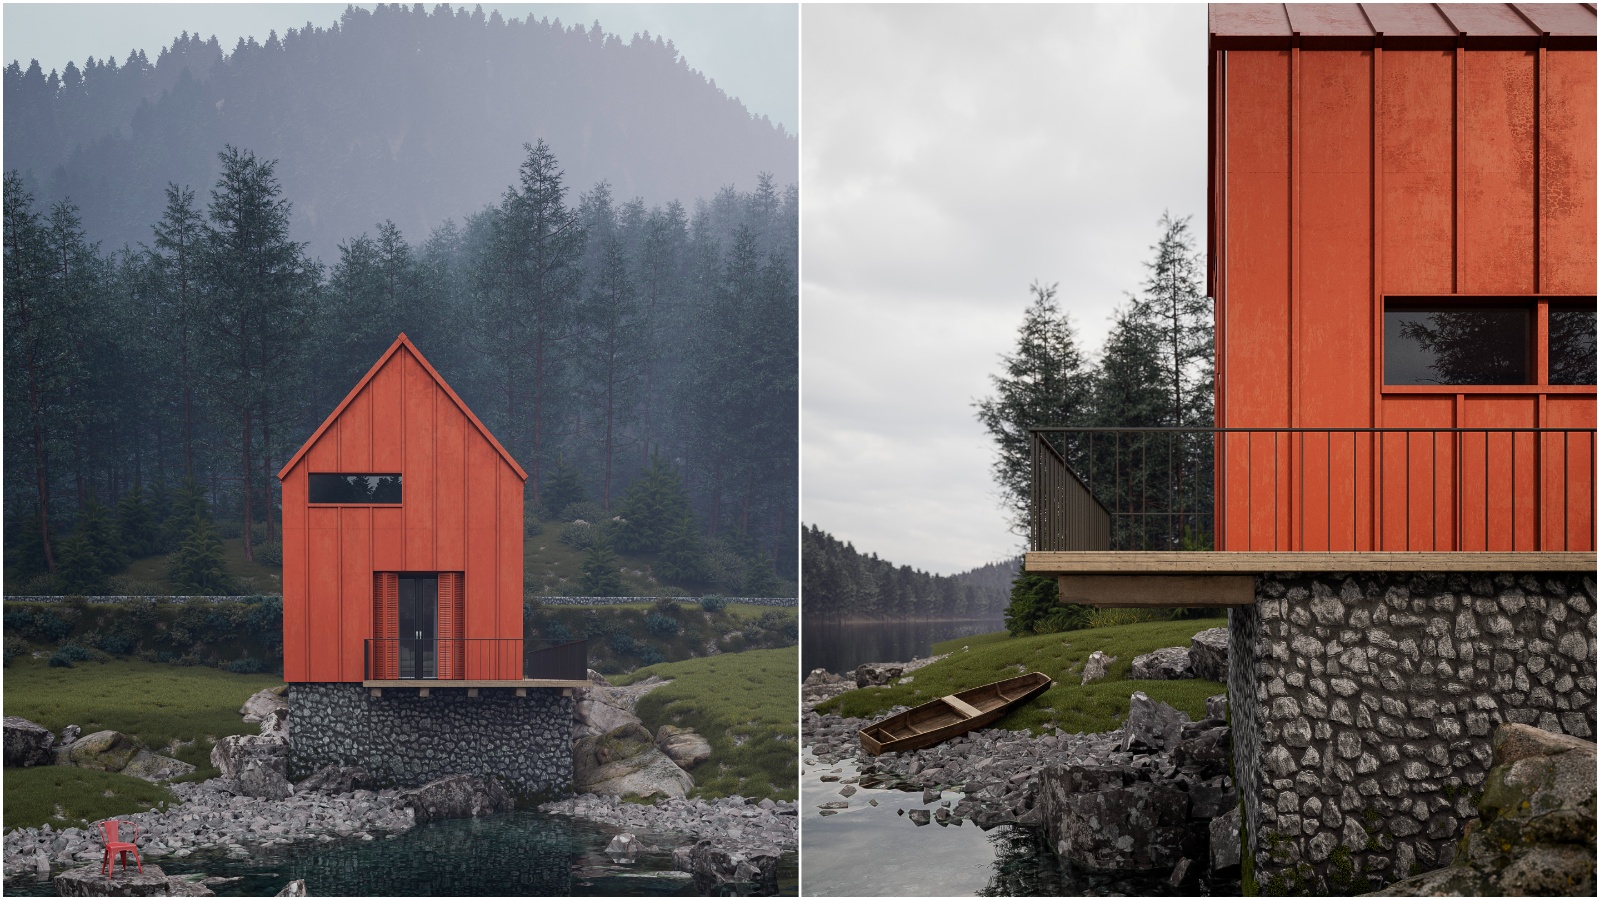 Hrvatski studio osmislio je ovu crvenu ribarsku kućicu na jezeru koja u isto vrijeme izgleda mistično i privlačno